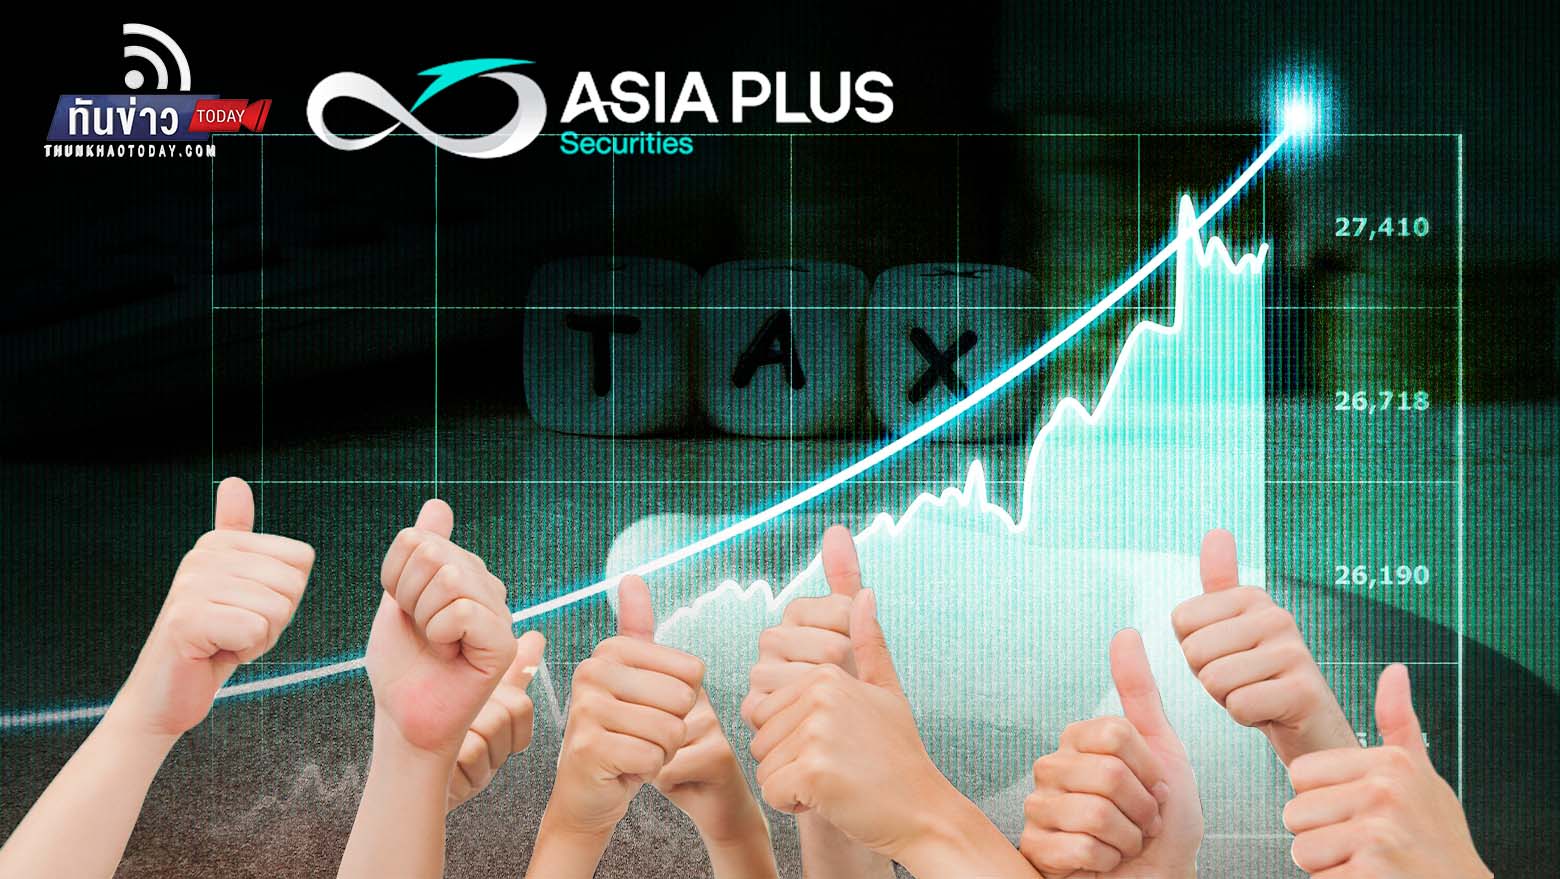 Asia Plus เปิดโผหุ้นเด่น รับข่าวเลื่อนเก็บภาษีซื้อขายหุ้น คาดต่างชาติกลับมาลงทุนหลังขายออก 2.8 หมื่นล้านบาท ในช่วง 2 เดือนแรกของปี 66